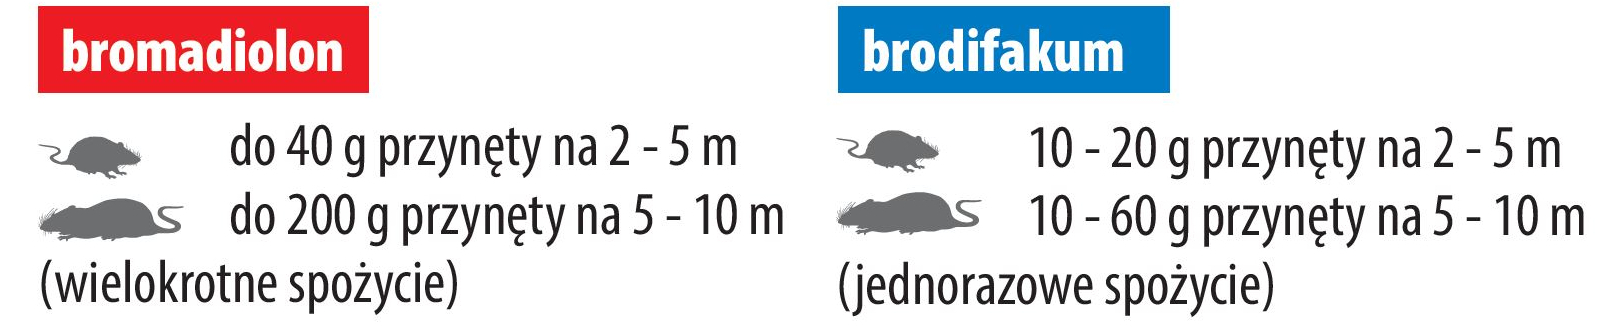 dawkowanie trutki na myszy, szczuty ratimor brodifakum